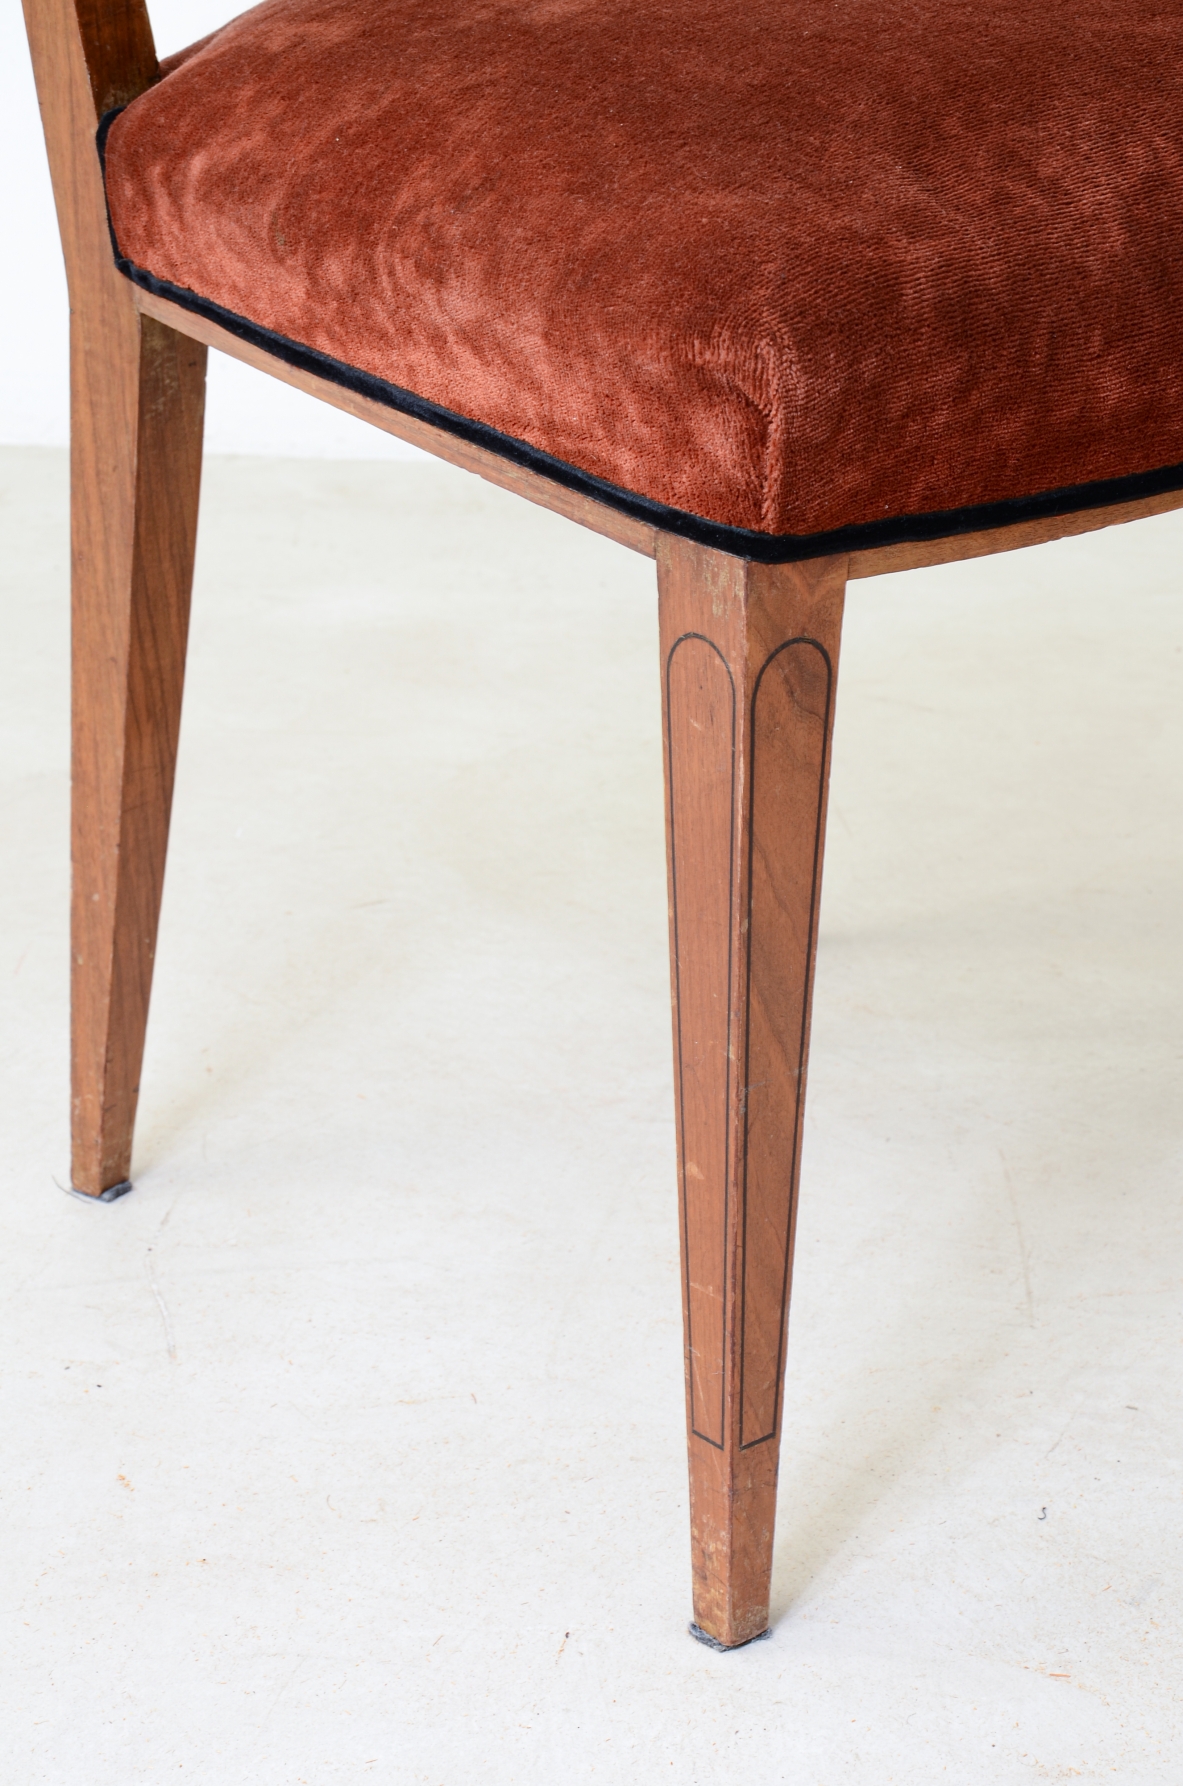 Paolo Buffa 8 elegant walnut chairs. Lietti manufacture 1930. Provenienza Gio Ponti